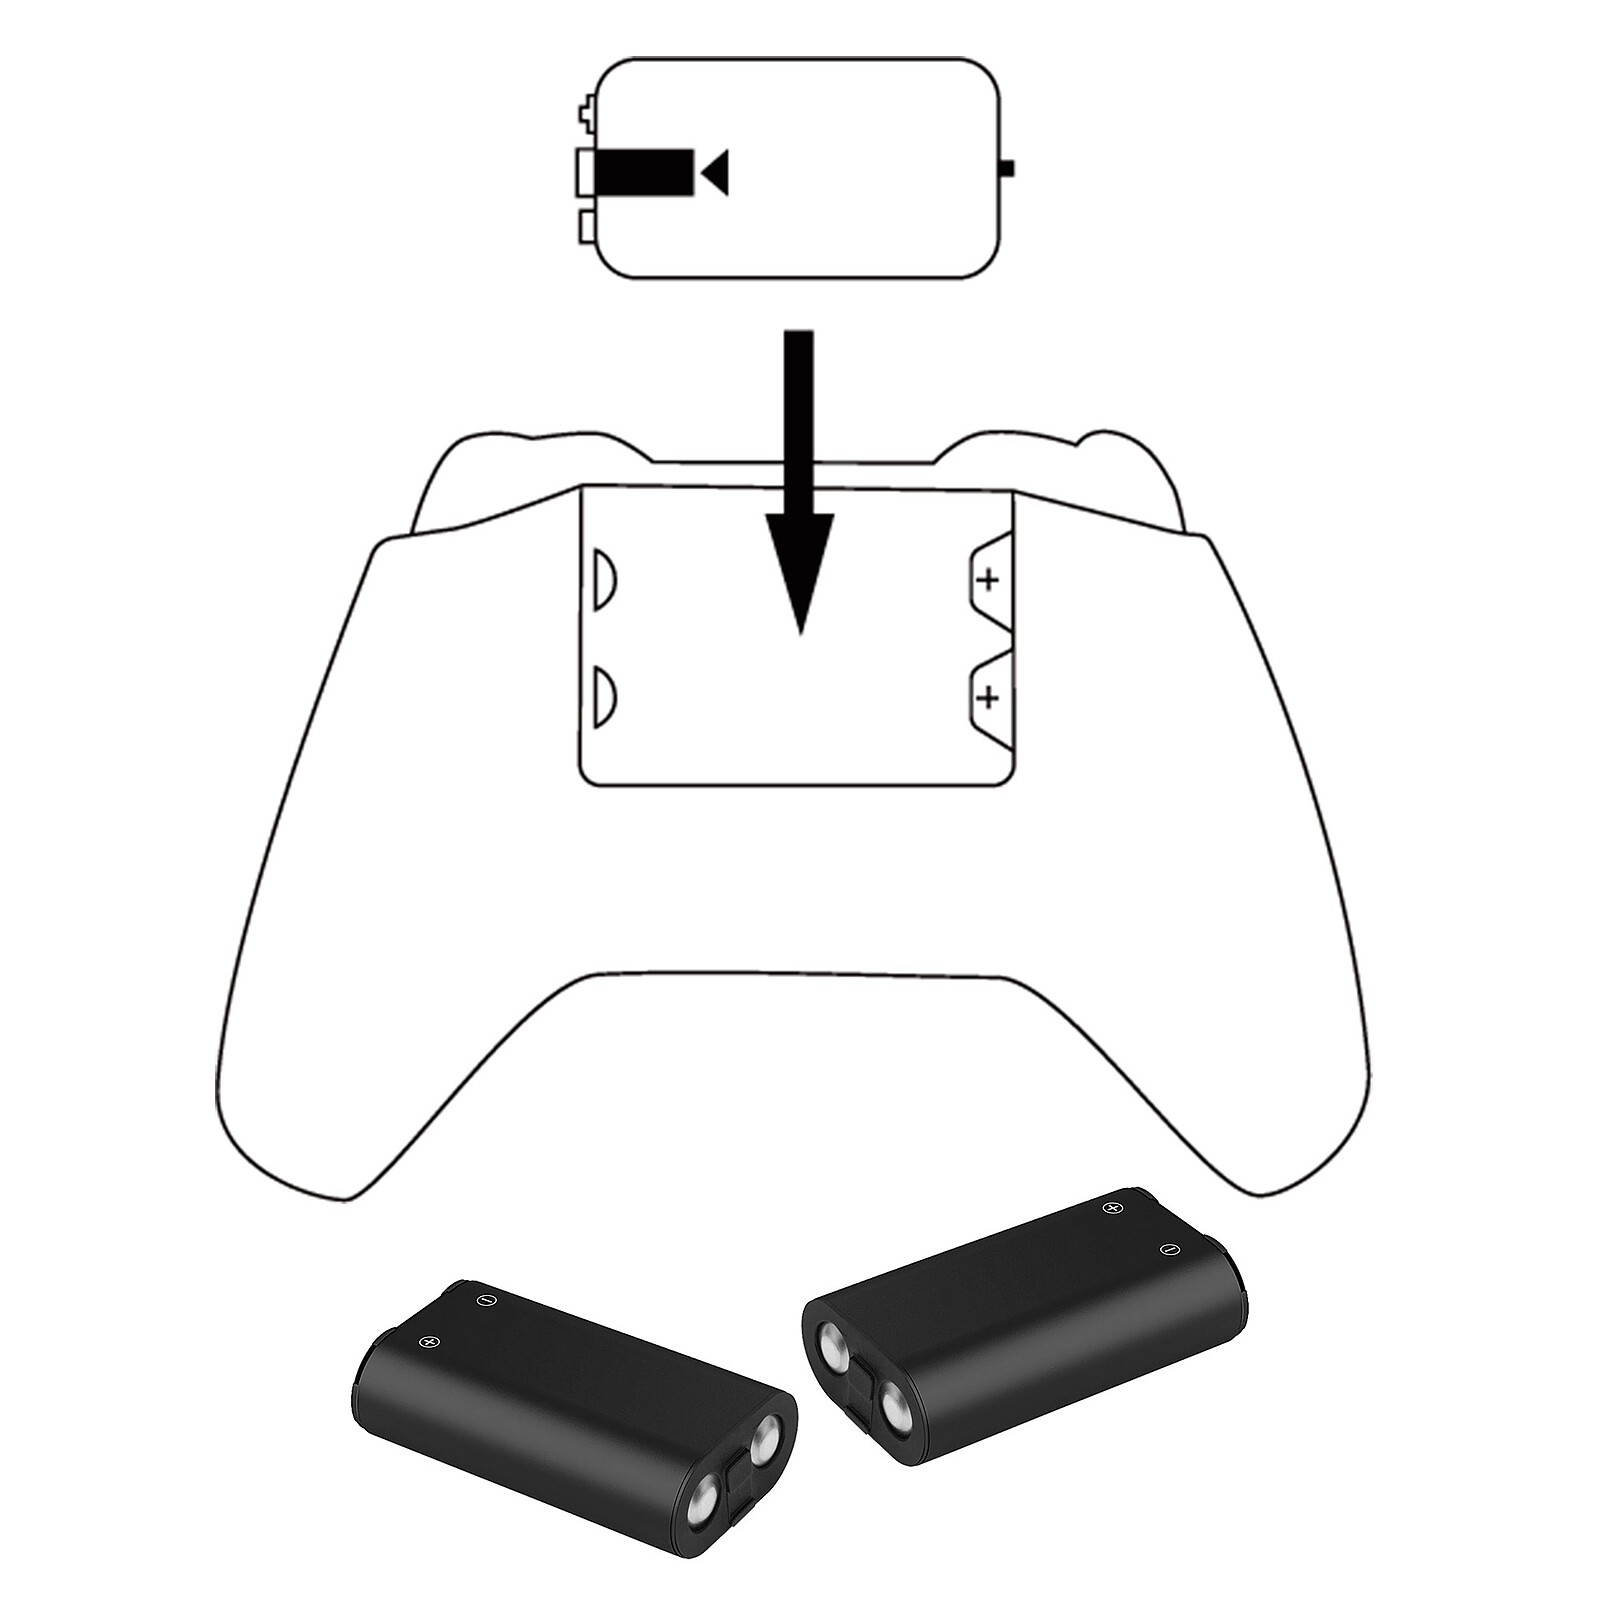 Subsonic - Pack de charge avec 2 batteries pour Xbox Serie X